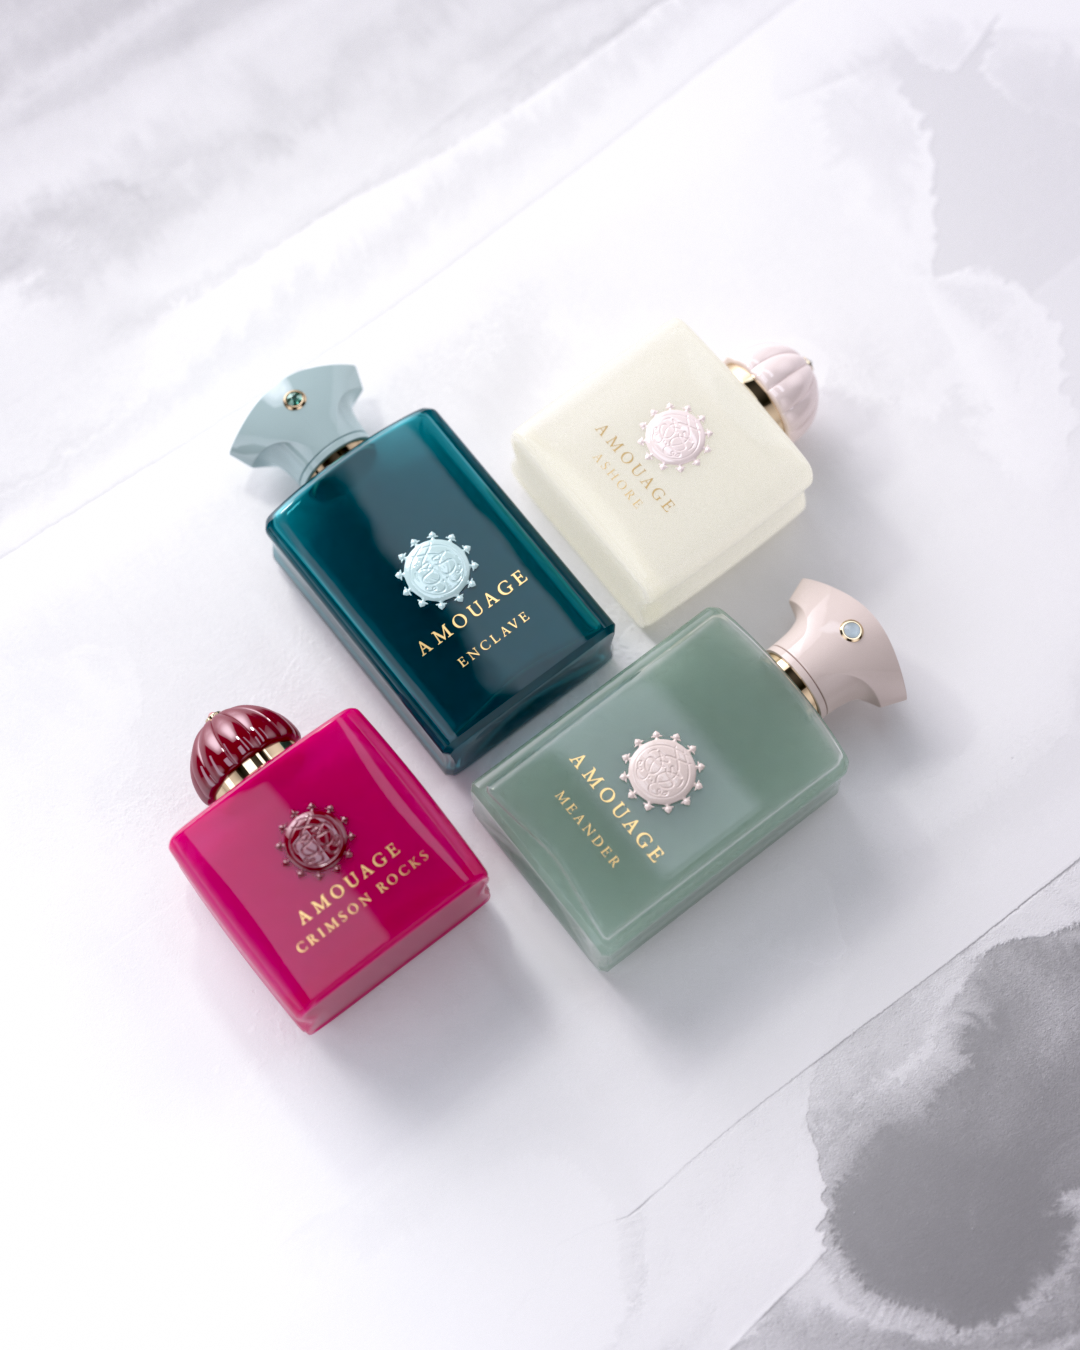 Amouage выпустил новую коллекцию ароматов Renaissance